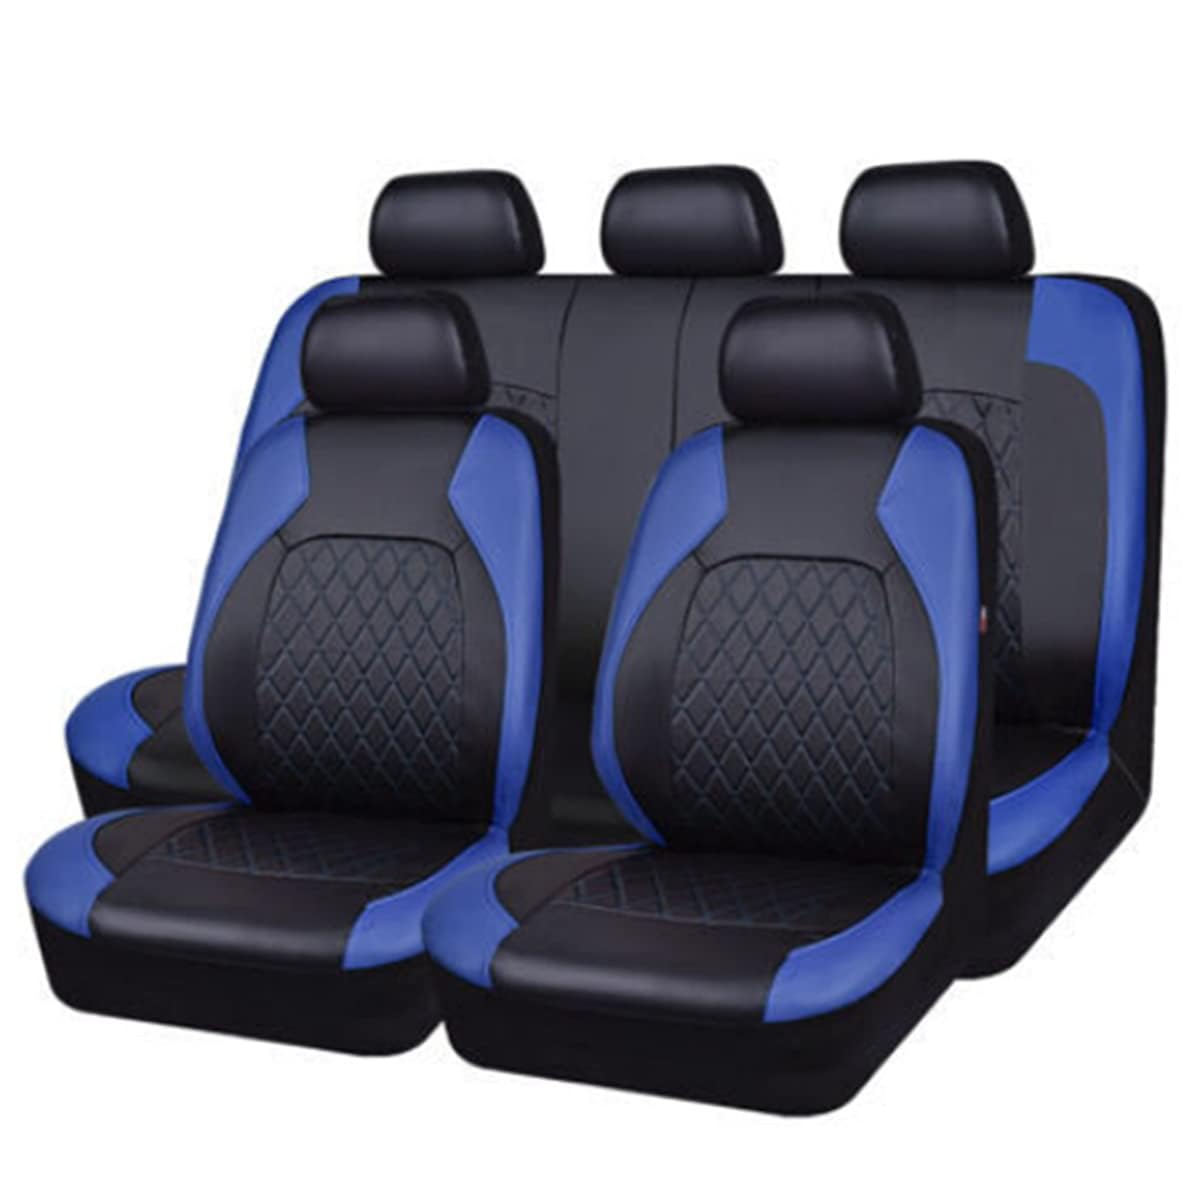 ICOMPY Auto Leder Sitzbezüge Für Daihatsu Materia 2006-2016, Wasserdicht Werkstatt Innenraum Schonbezüge Sitzschoner Auto Accessories (5 Sitzplätze),A-Blue von ICOMPY